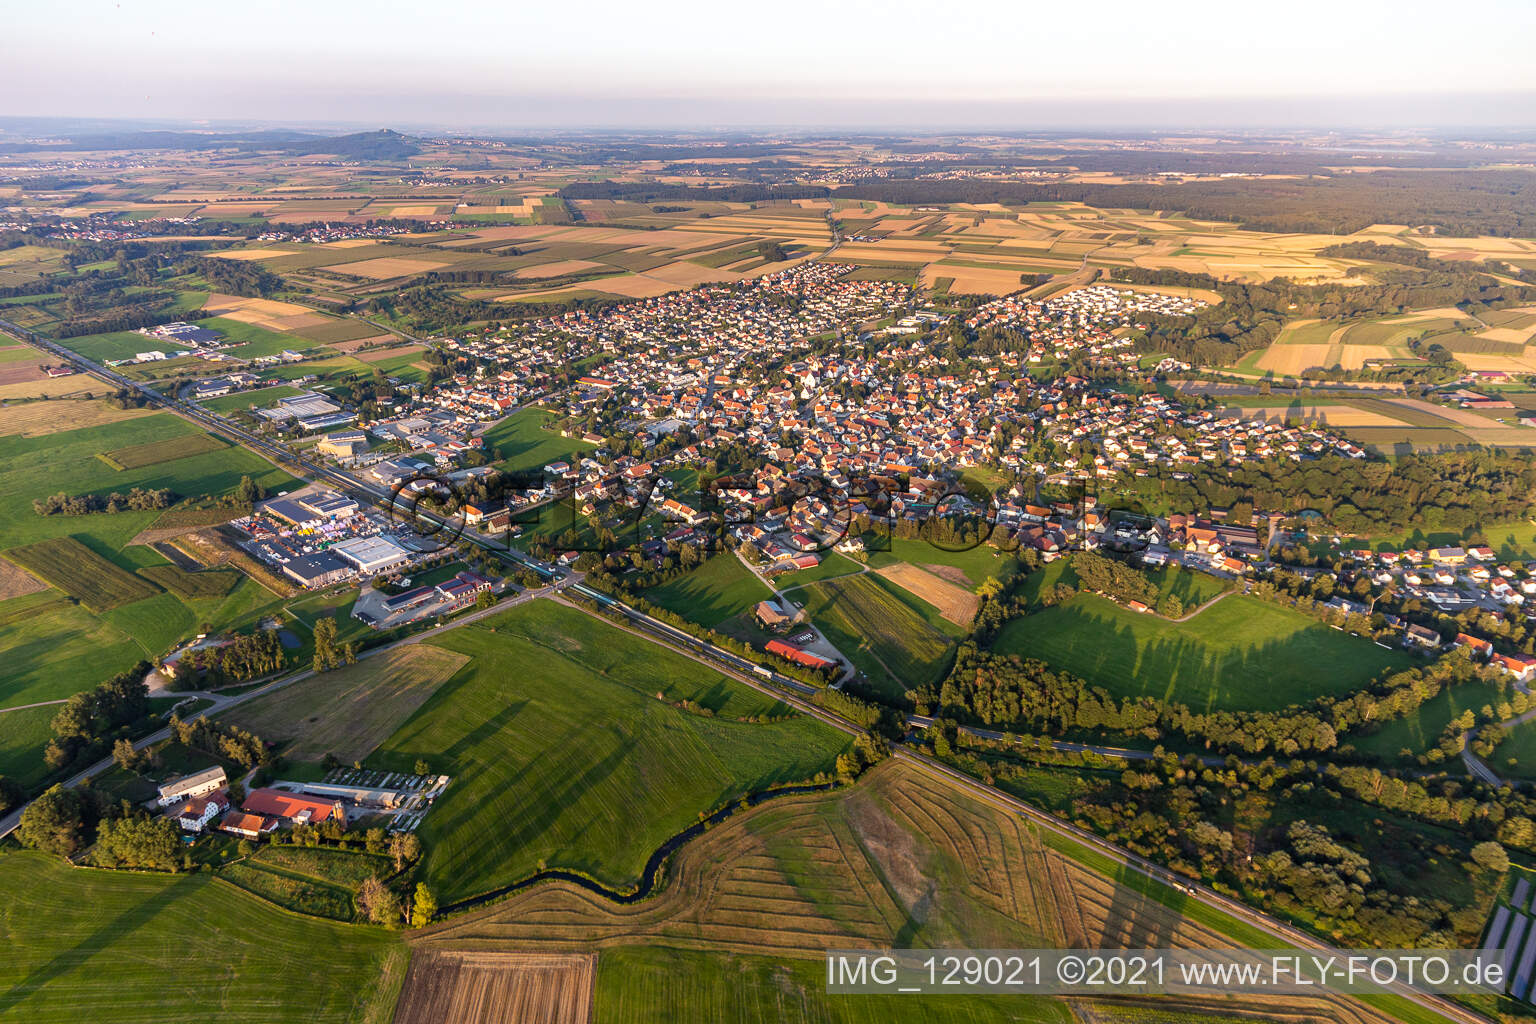 Vue aérienne de Vue des rues et des maisons des quartiers résidentiels à Ertingen dans le département Bade-Wurtemberg, Allemagne